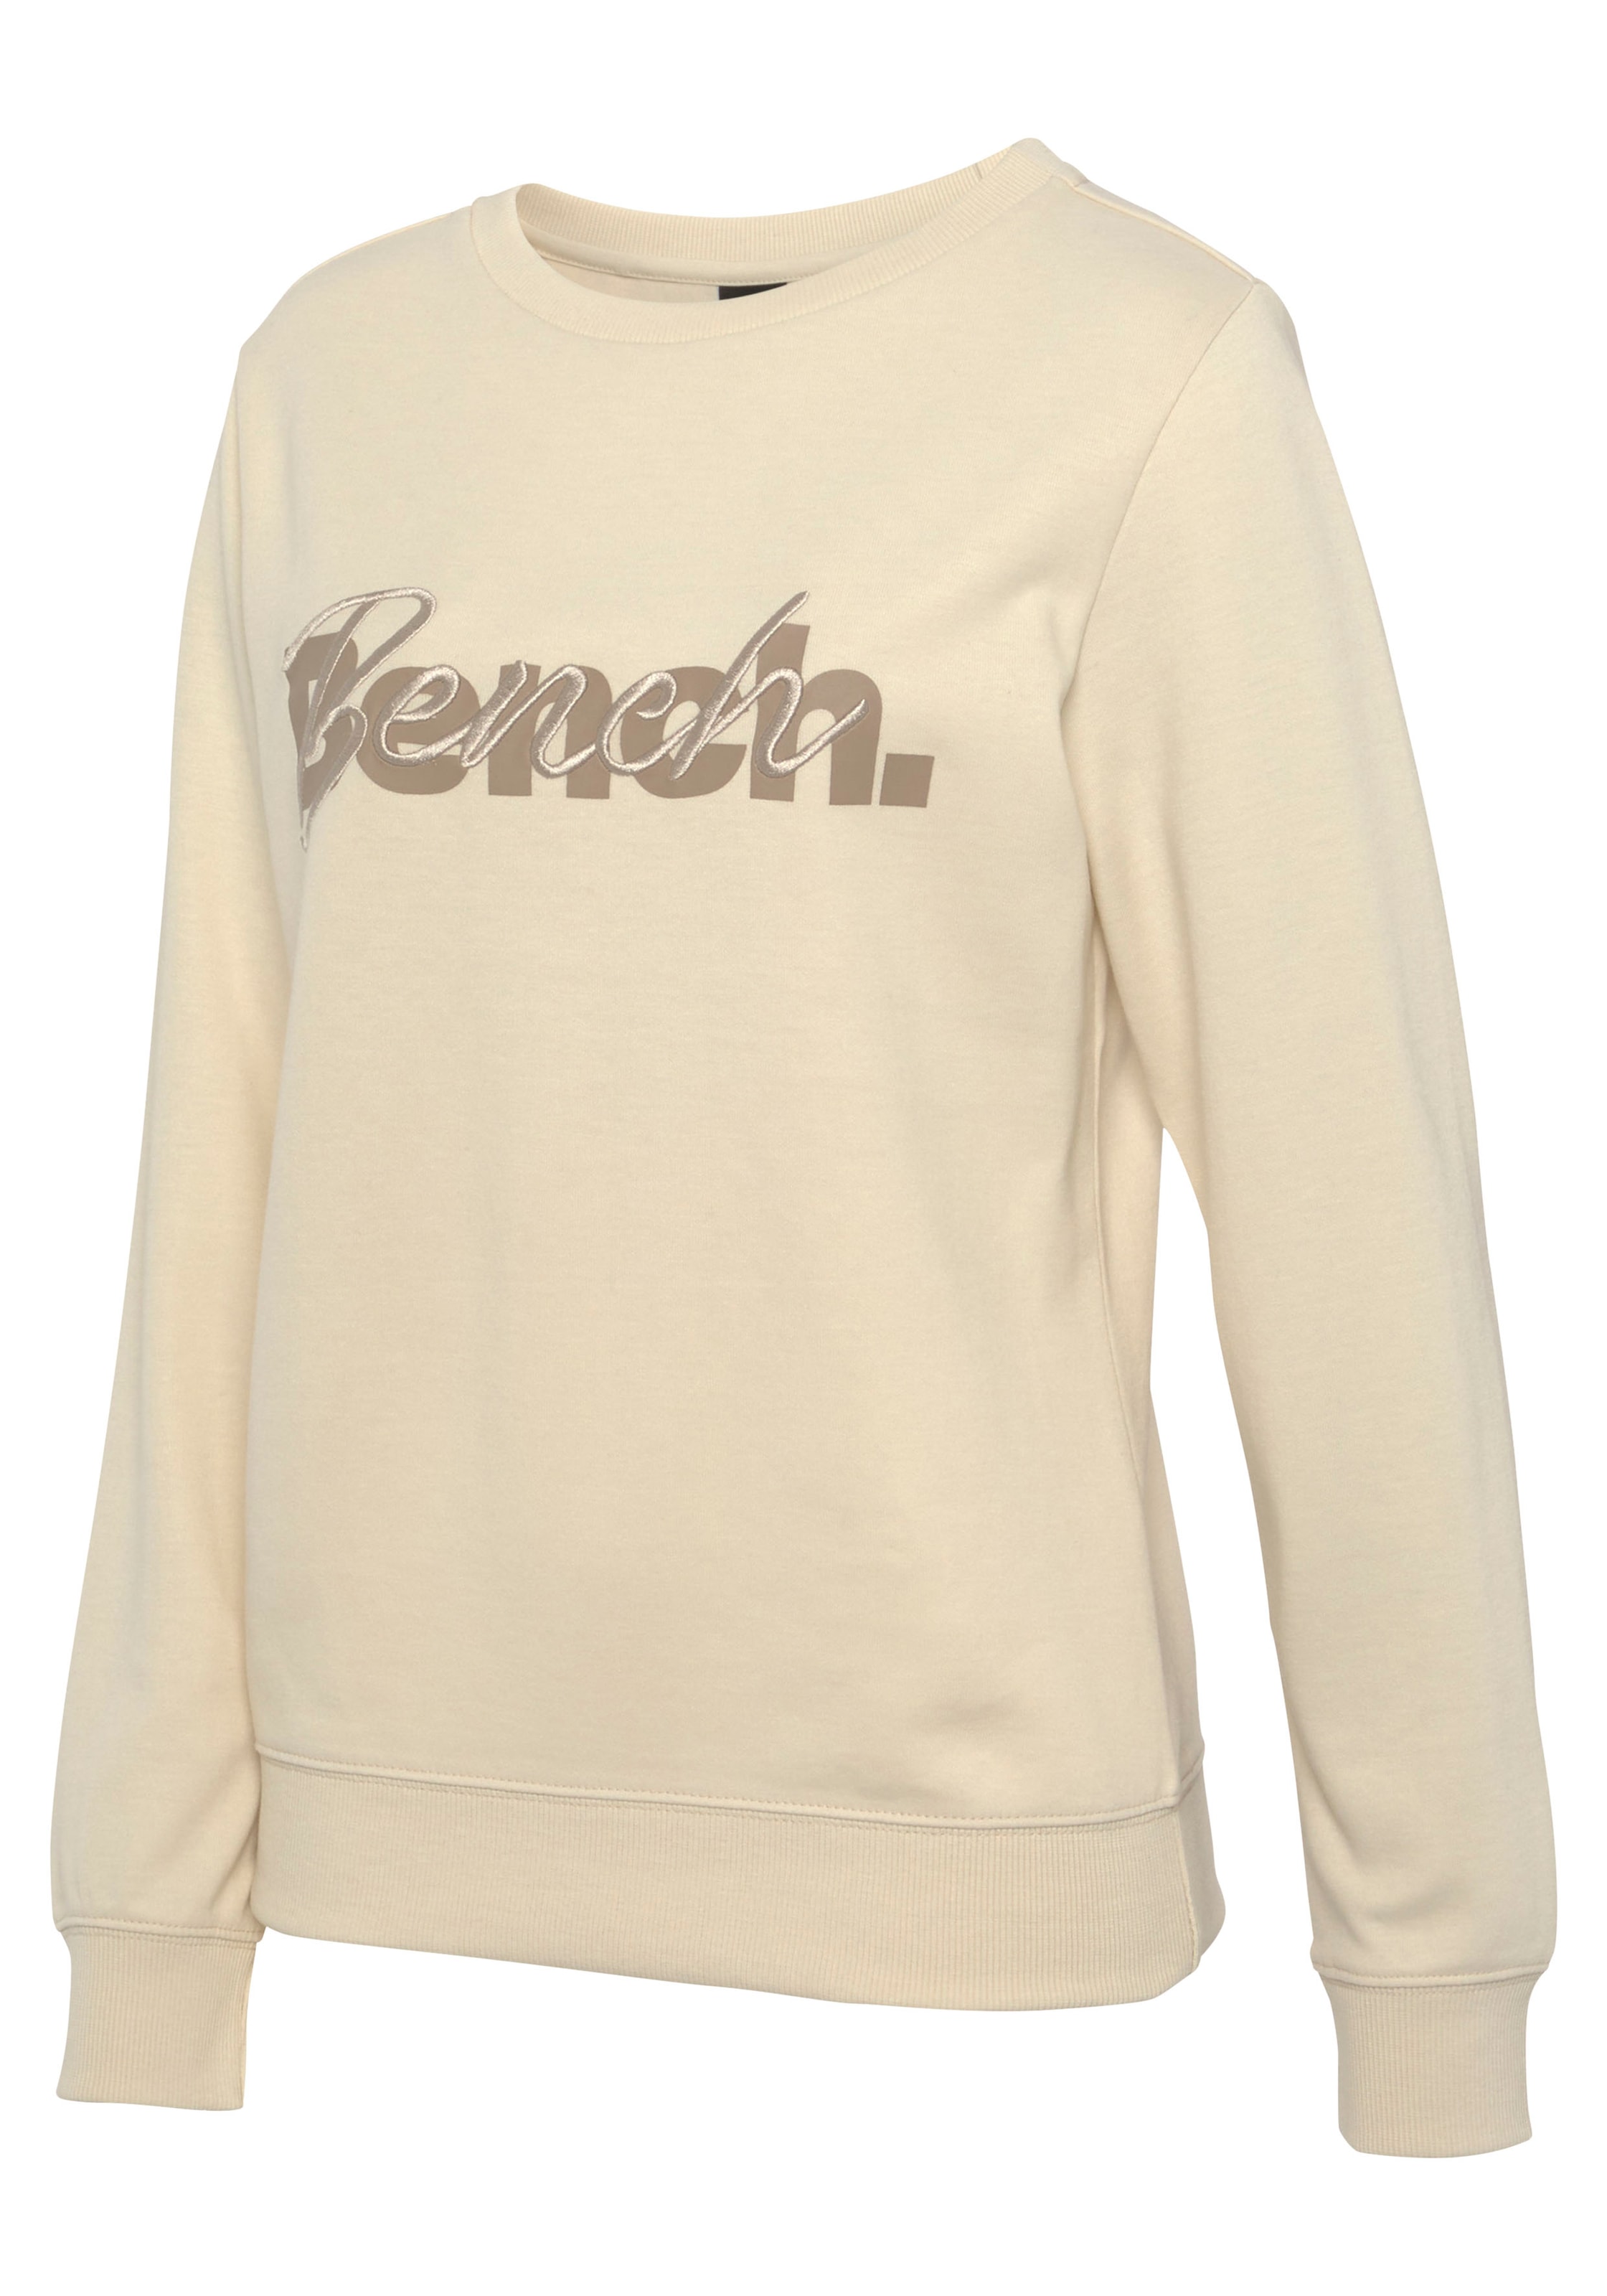 Bench. Loungewear Sweatshirt, mit Loungeanzug Logodruck und Stickerei, kaufen